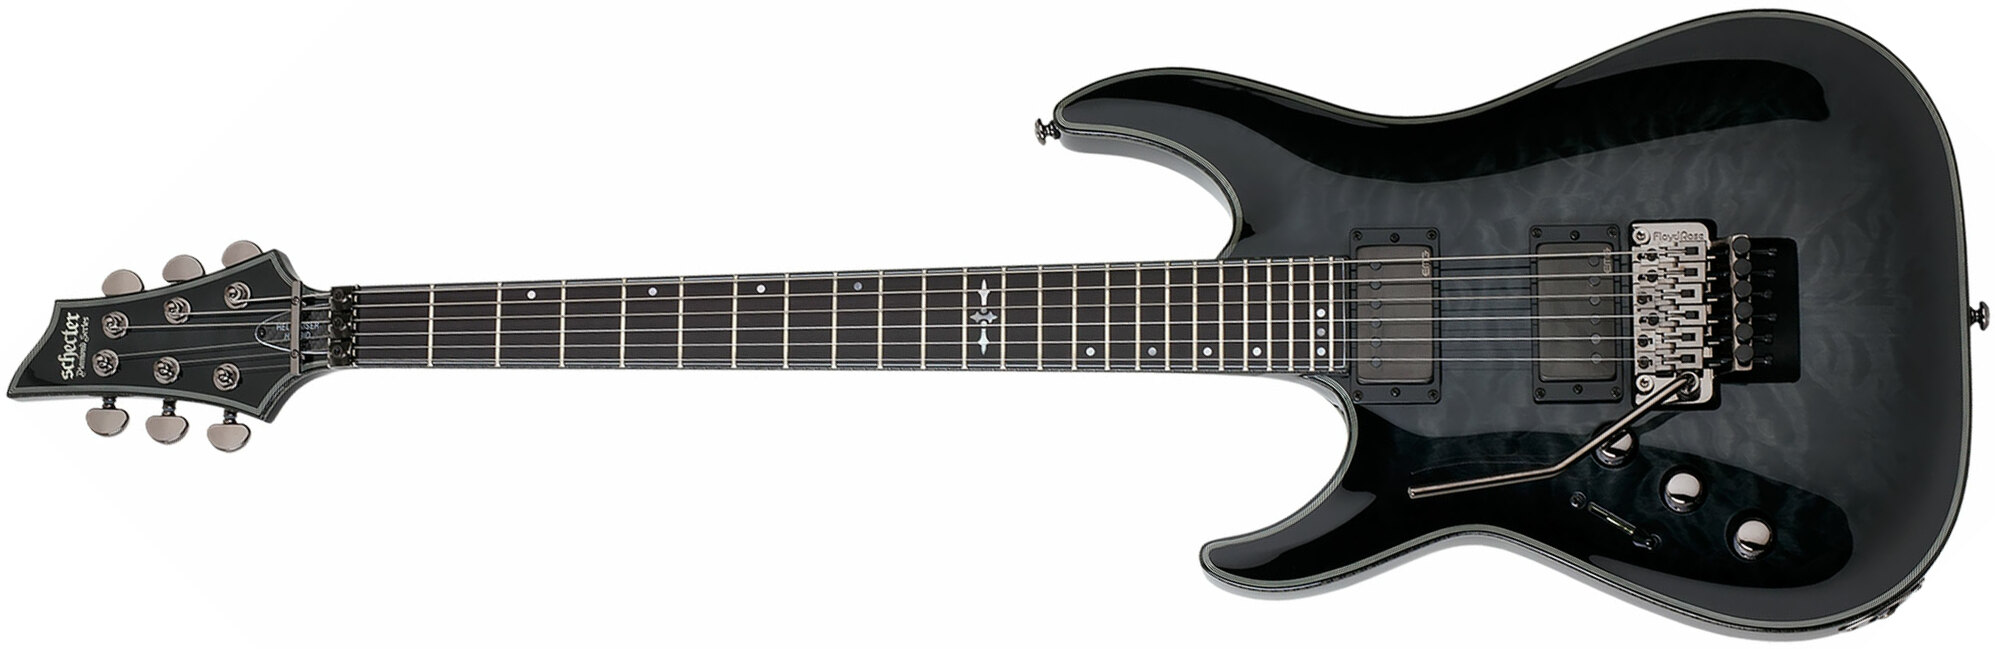 Schecter C-1 Fr Hellraiser Hybrid Lh Gaucher 2h Emg Eb - Trans. Black Burst - Linkshandige elektrische gitaar - Main picture